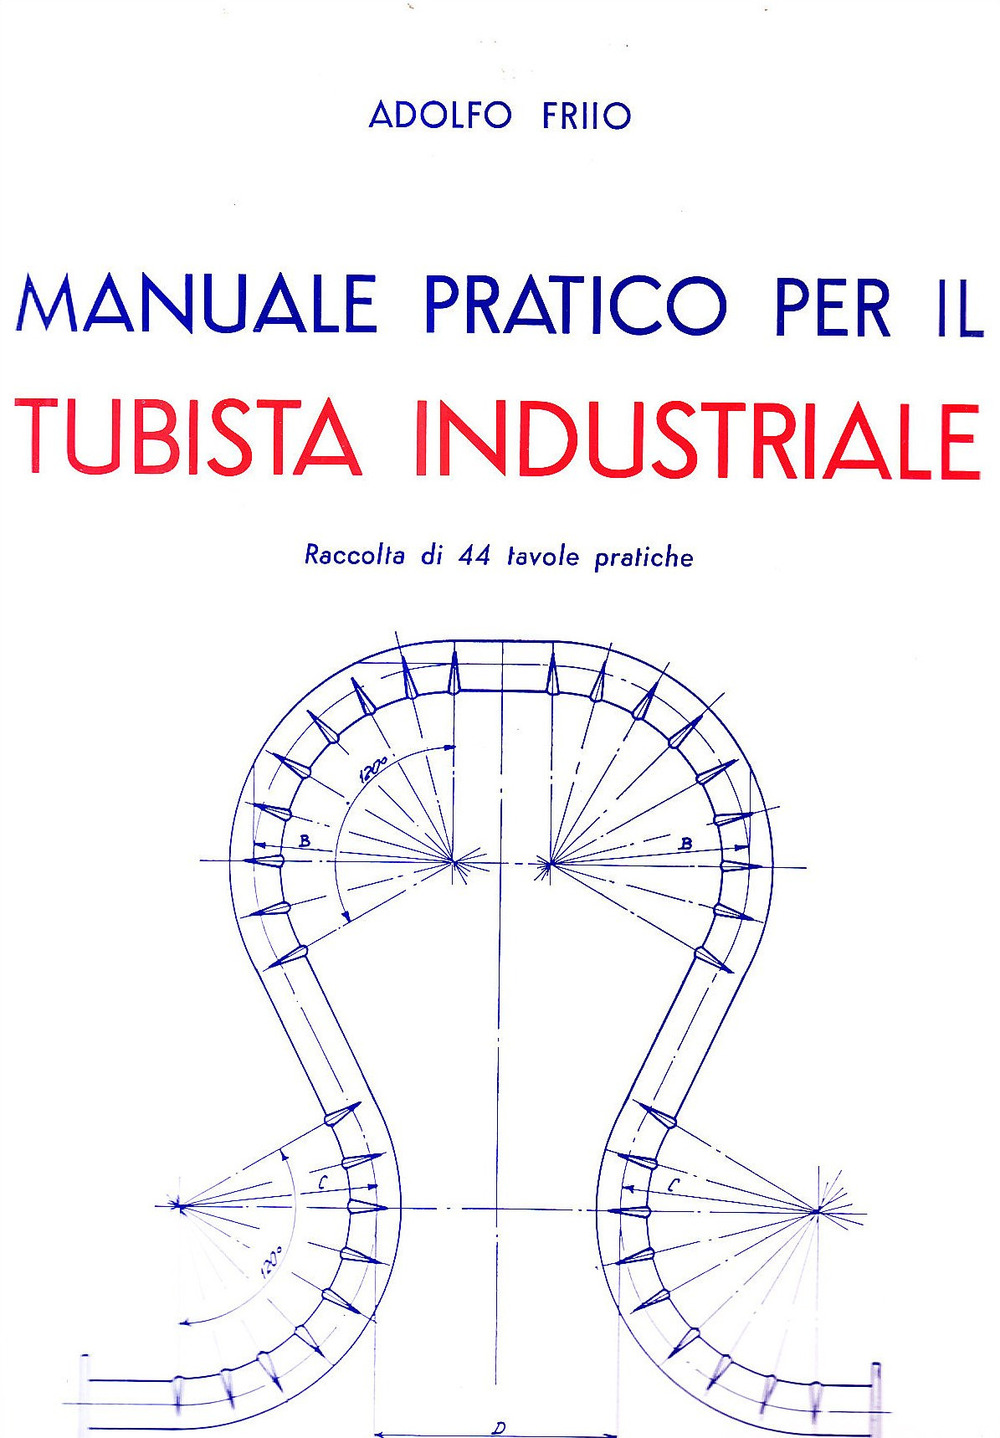 Manuale pratico per il tubista industriale - Friio A. - Picture 1 of 1